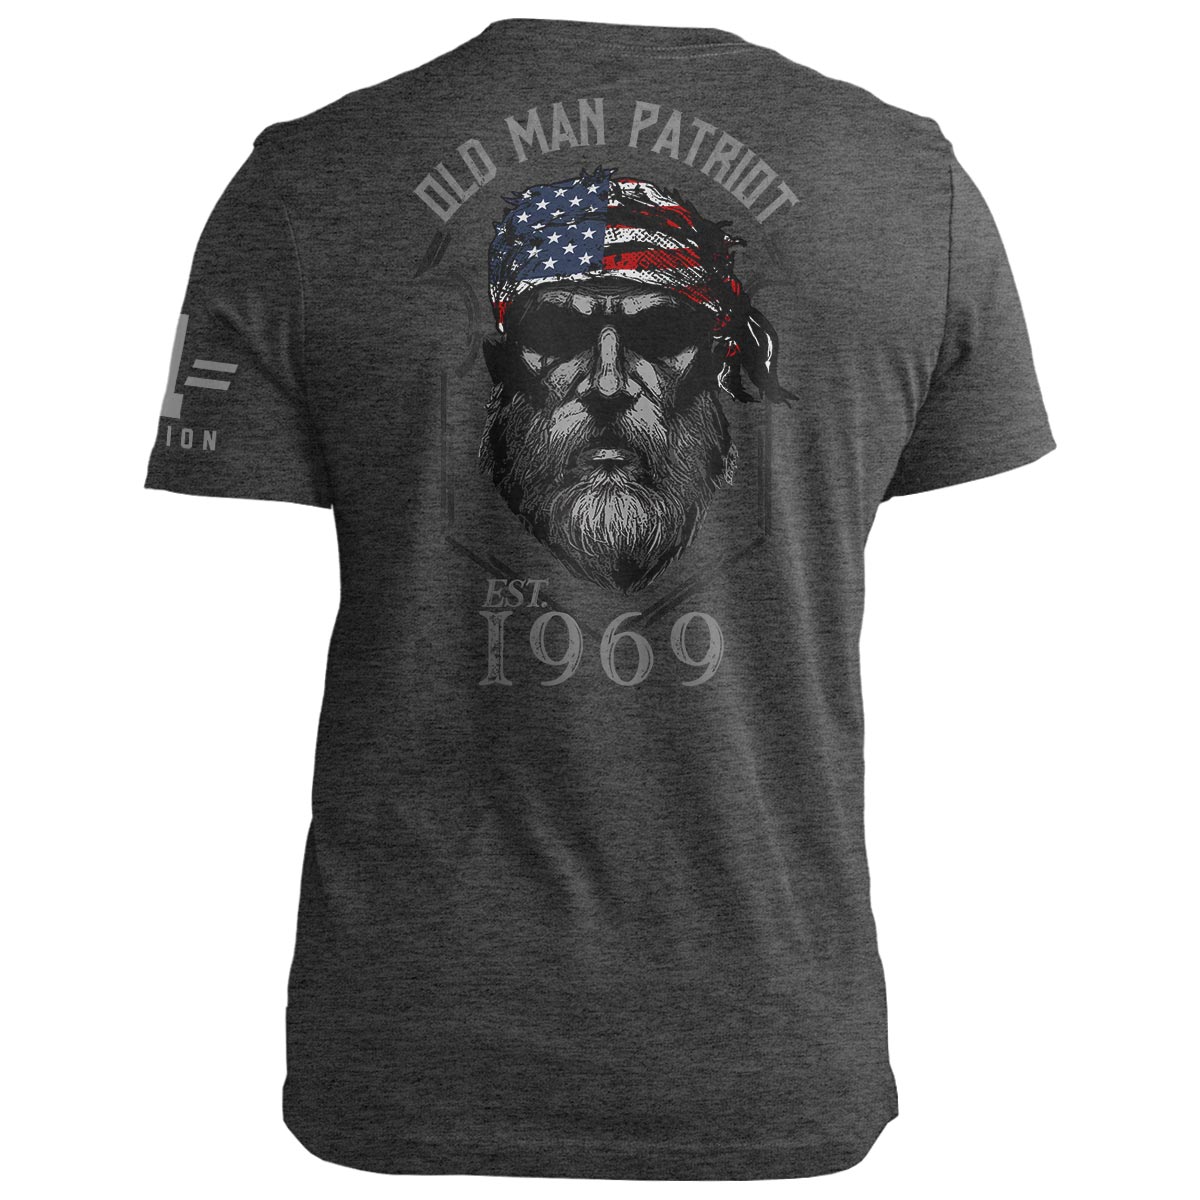 1969 Old Man Patriot